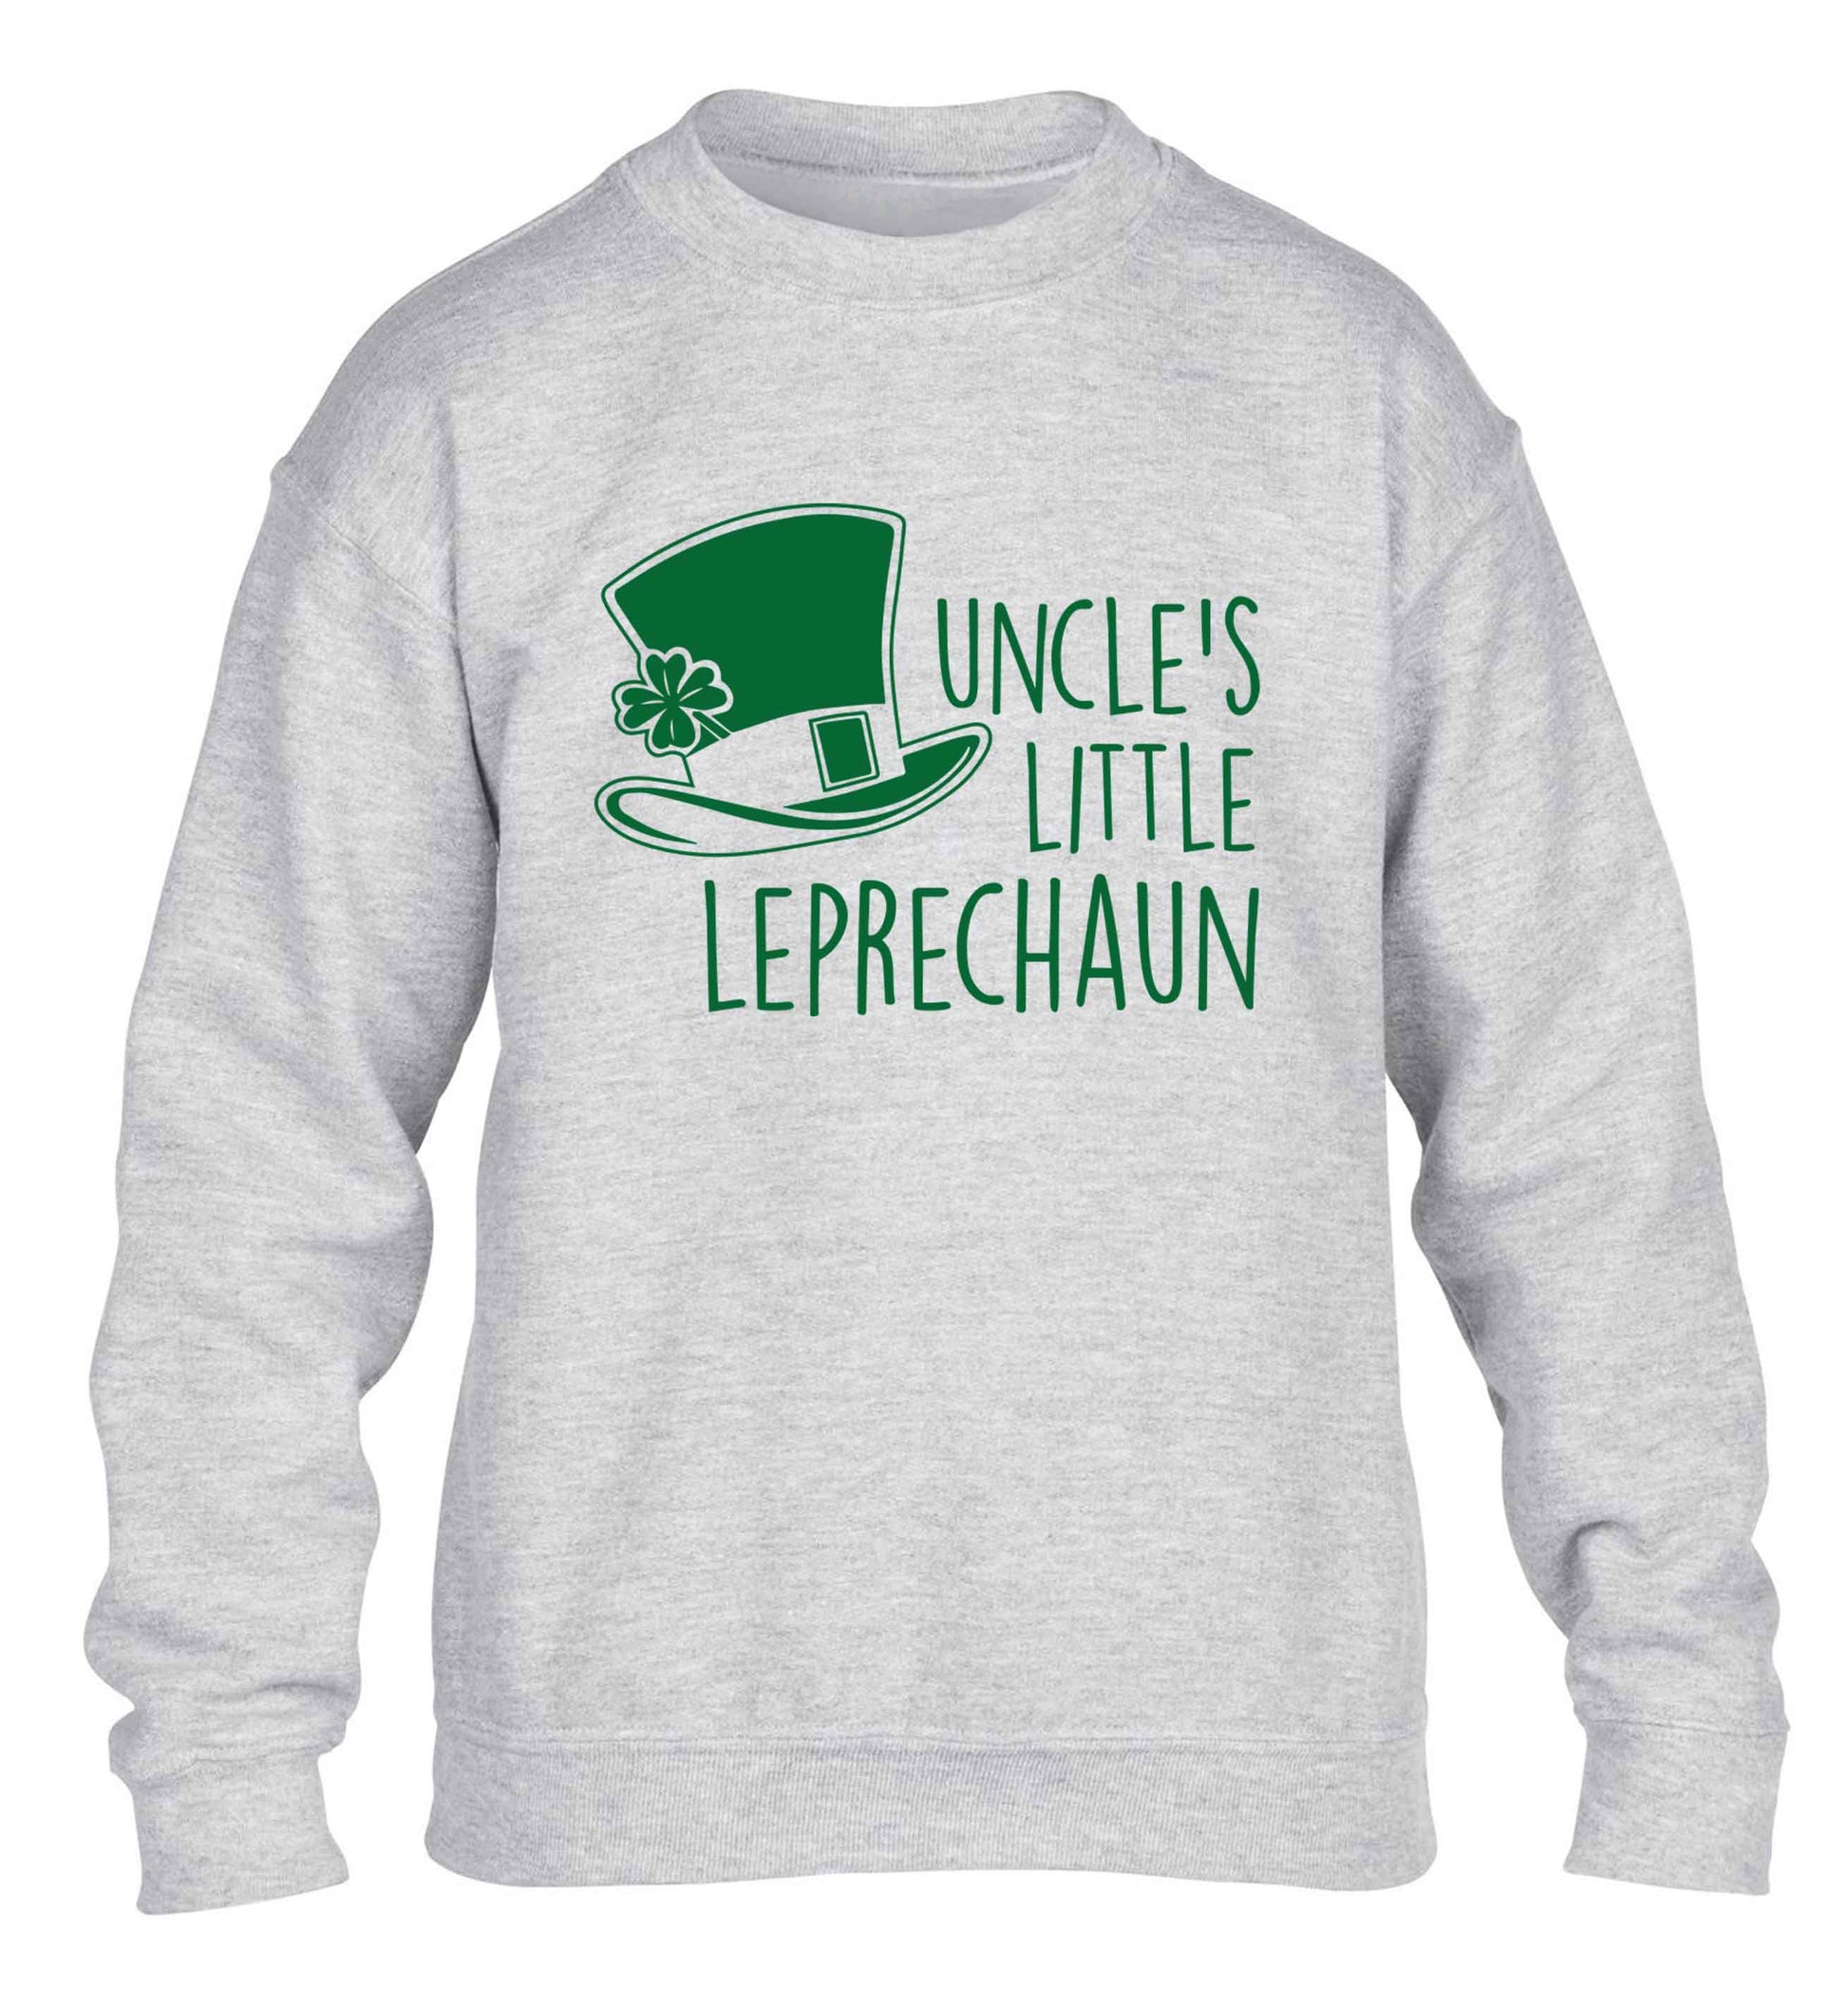 Uncles little leprechaun children's grey sweater 12-13 Years